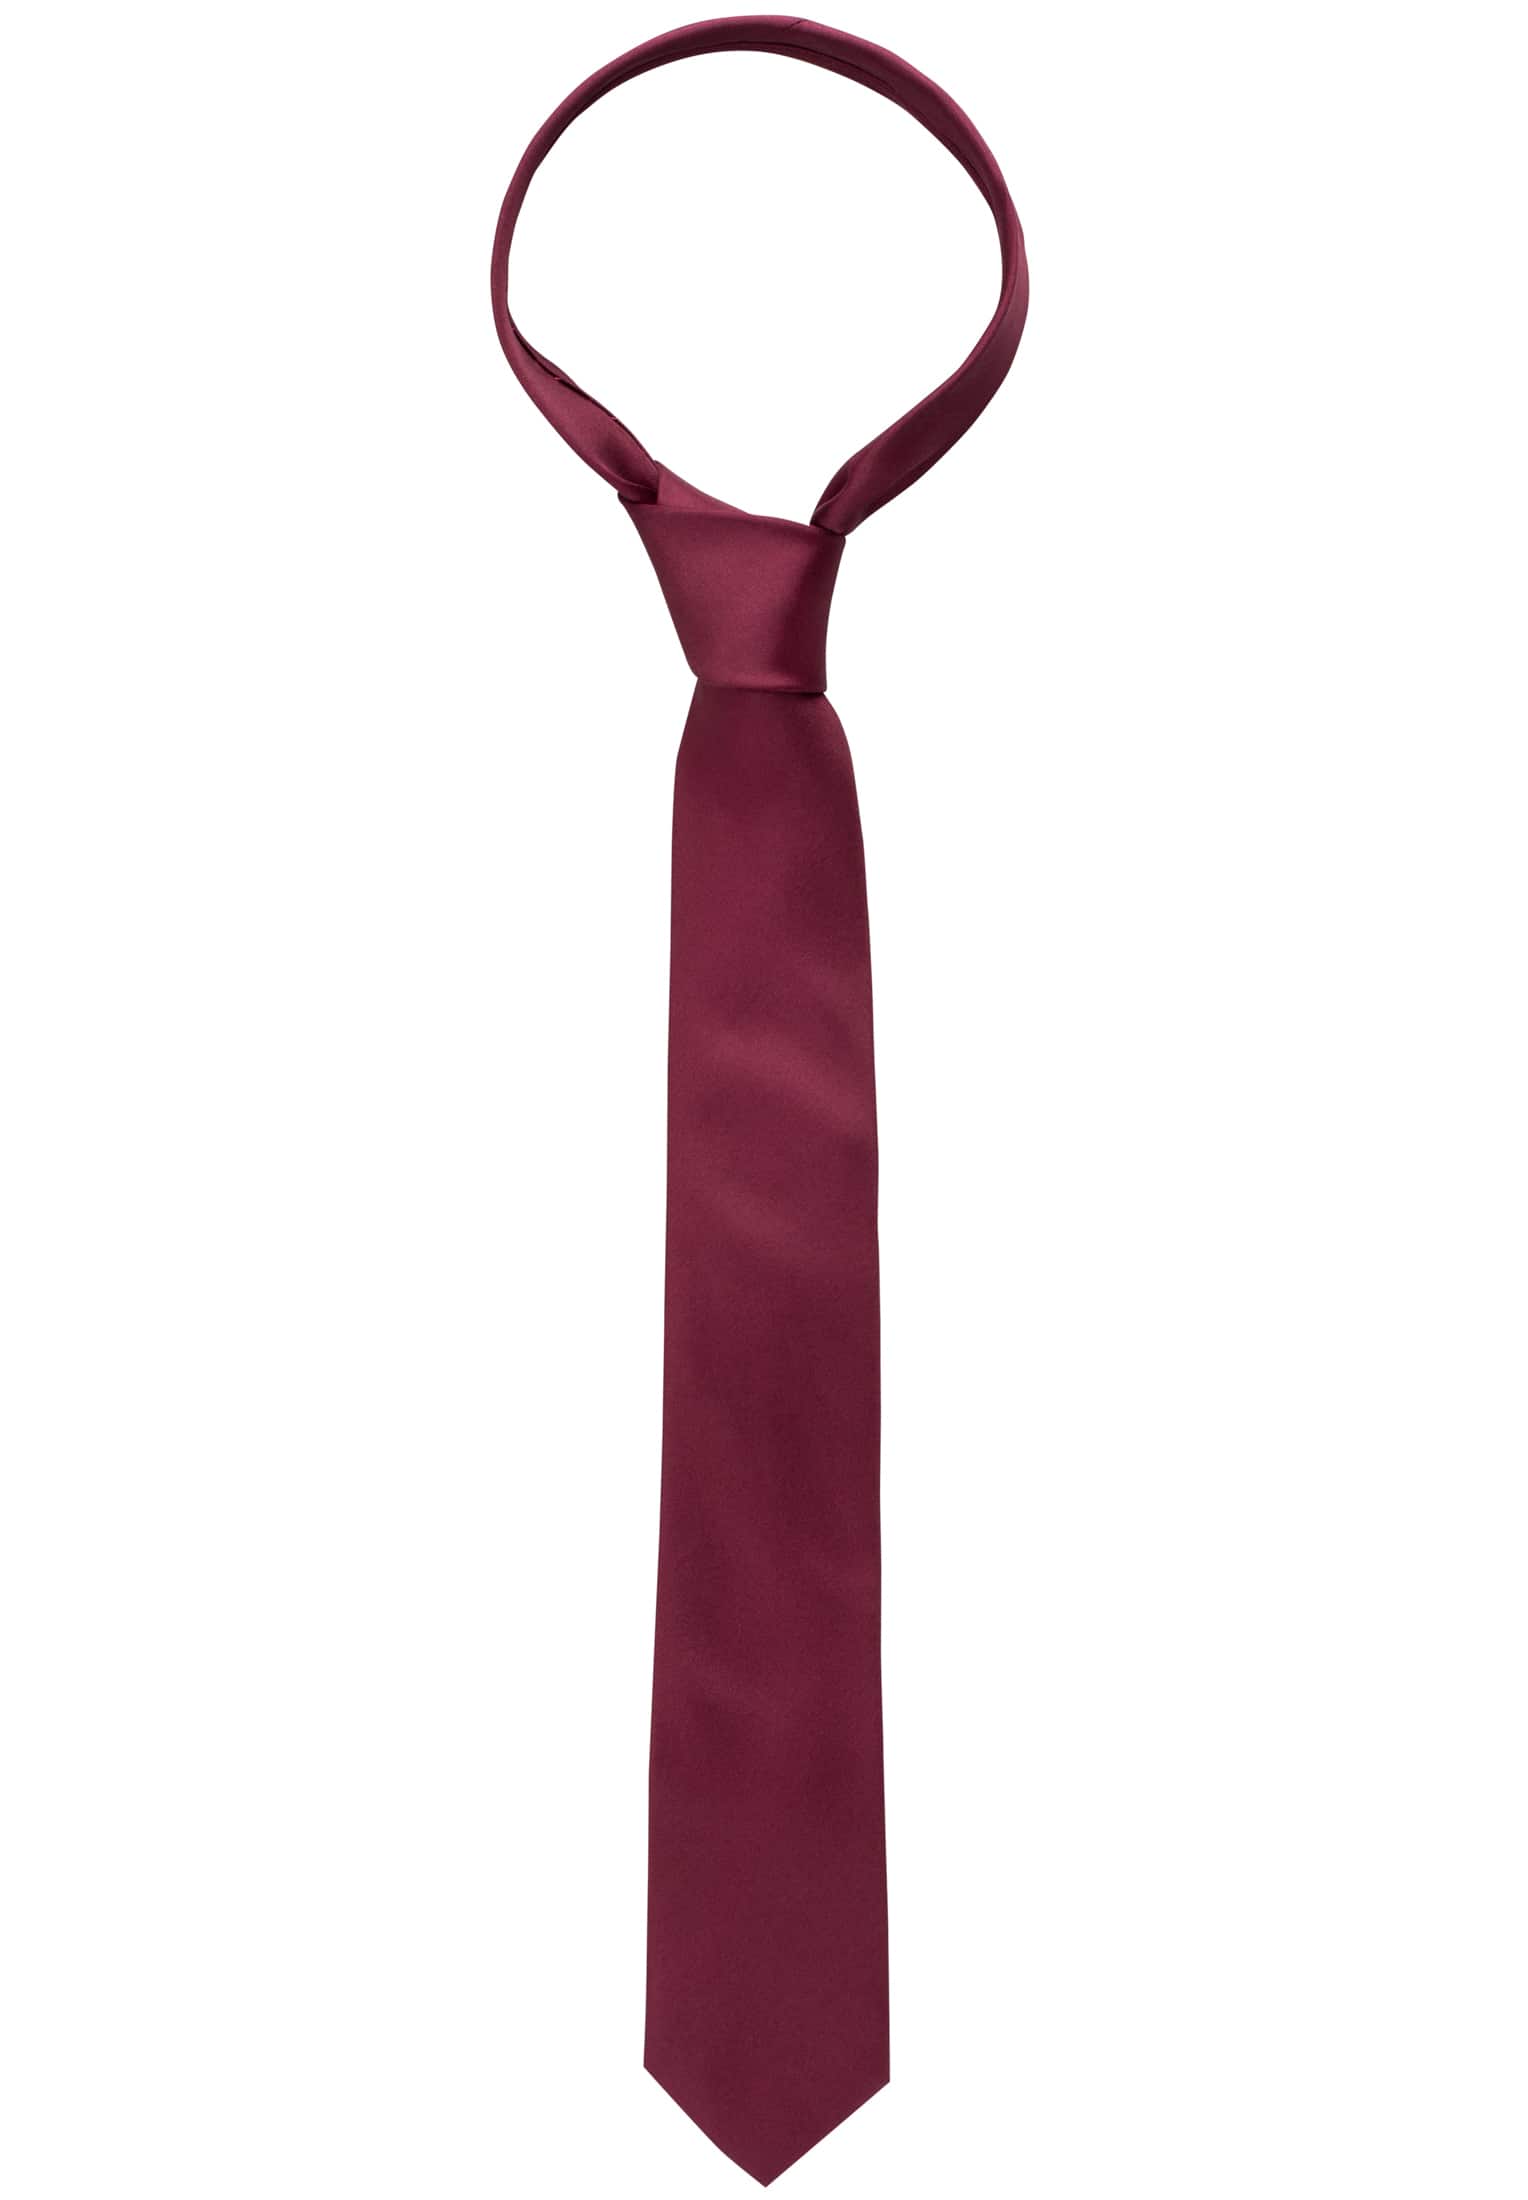 Krawatte in weinrot unifarben | weinrot | 142 | 1AC00025-05-62-142